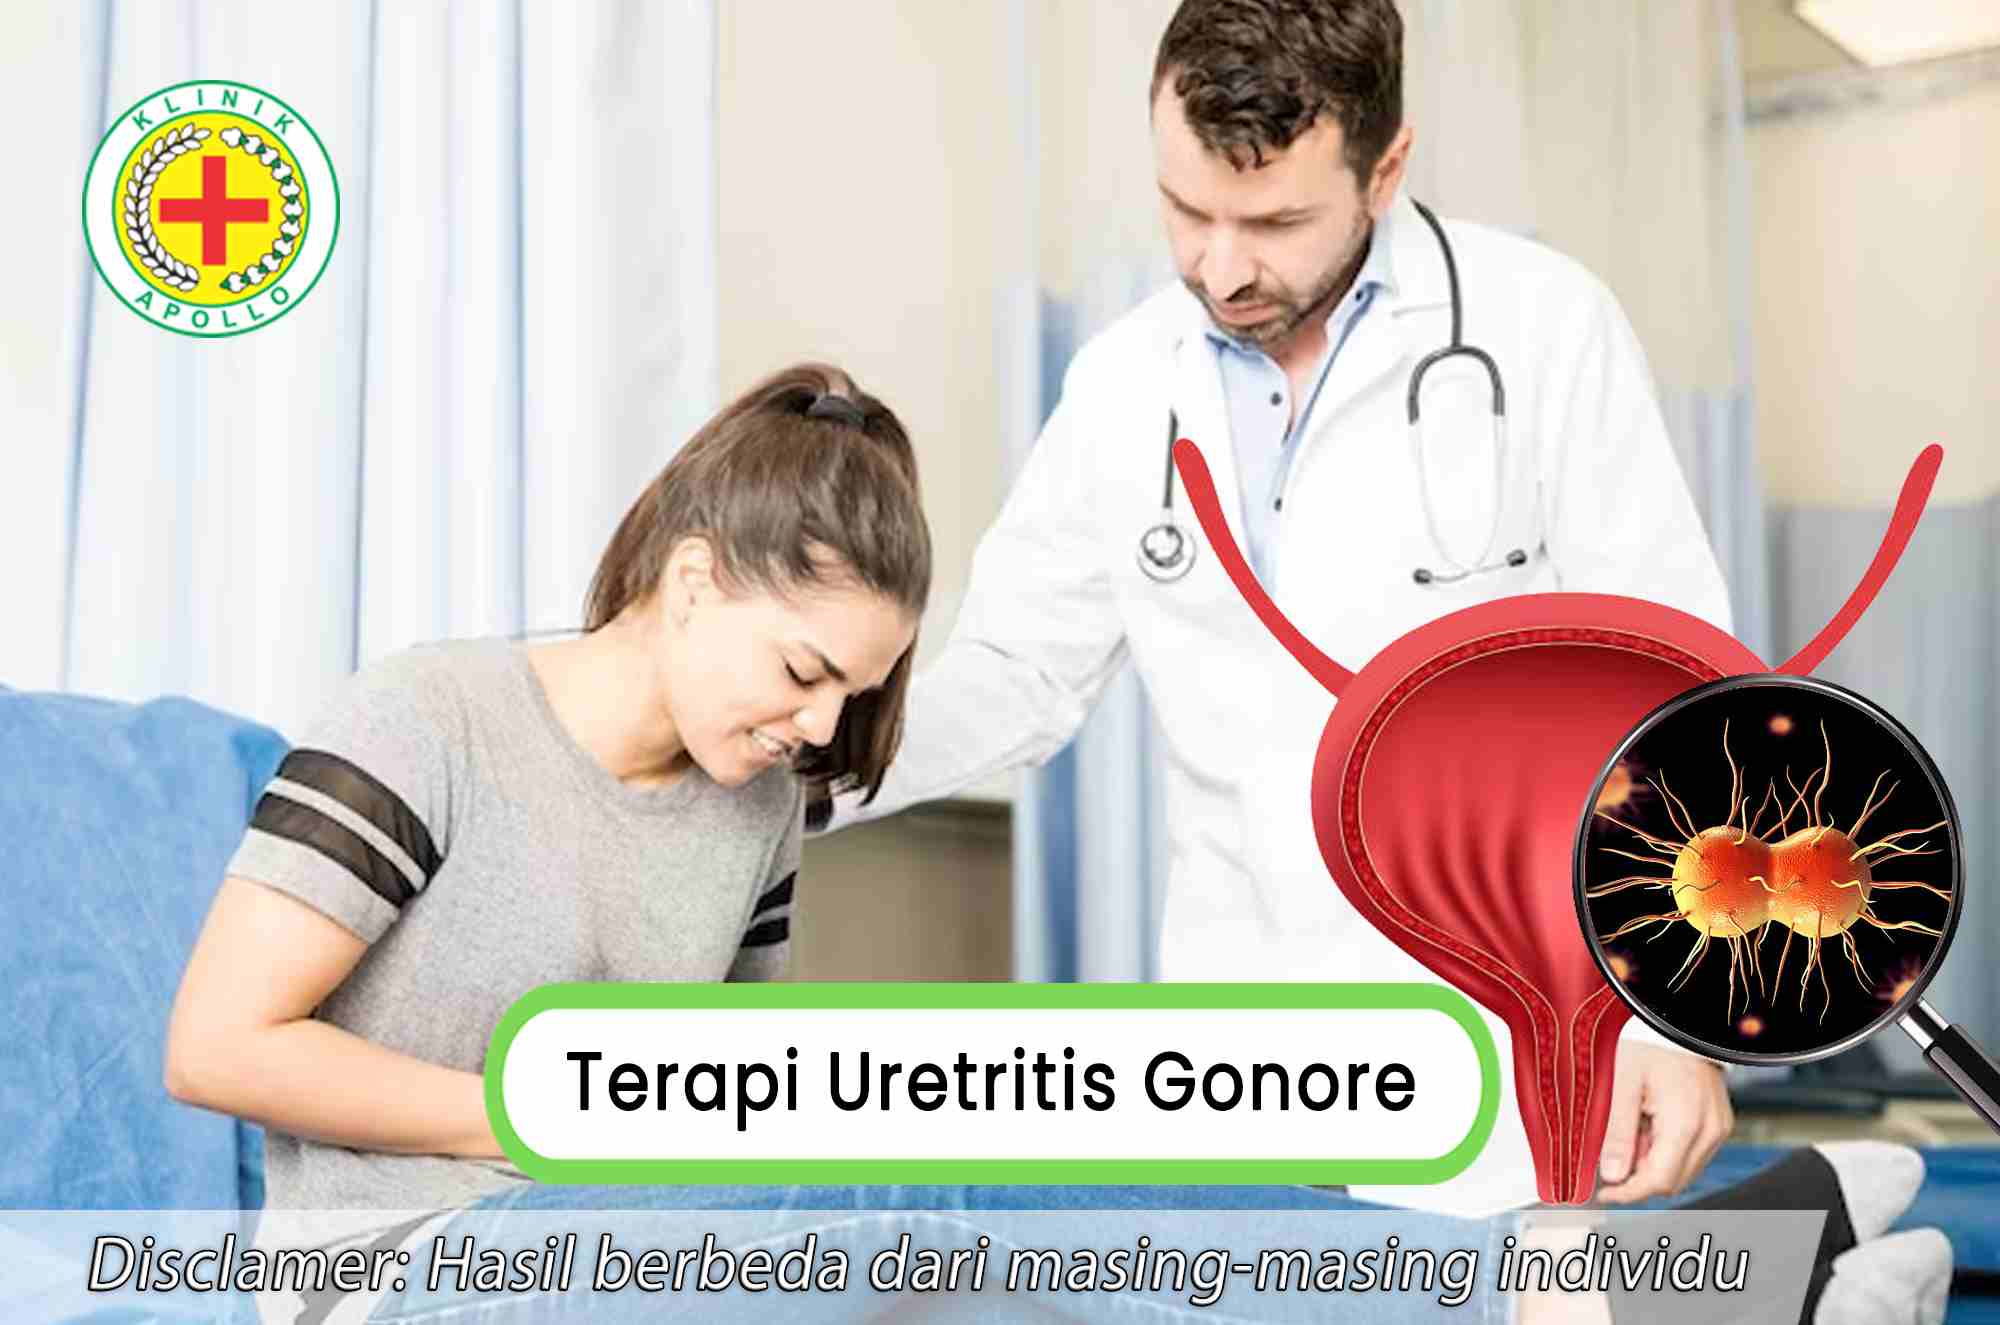 Prosedur terapi uretritis gonore hanya bisa dilakukan secara langsung oleh dokter ahli di klinik.